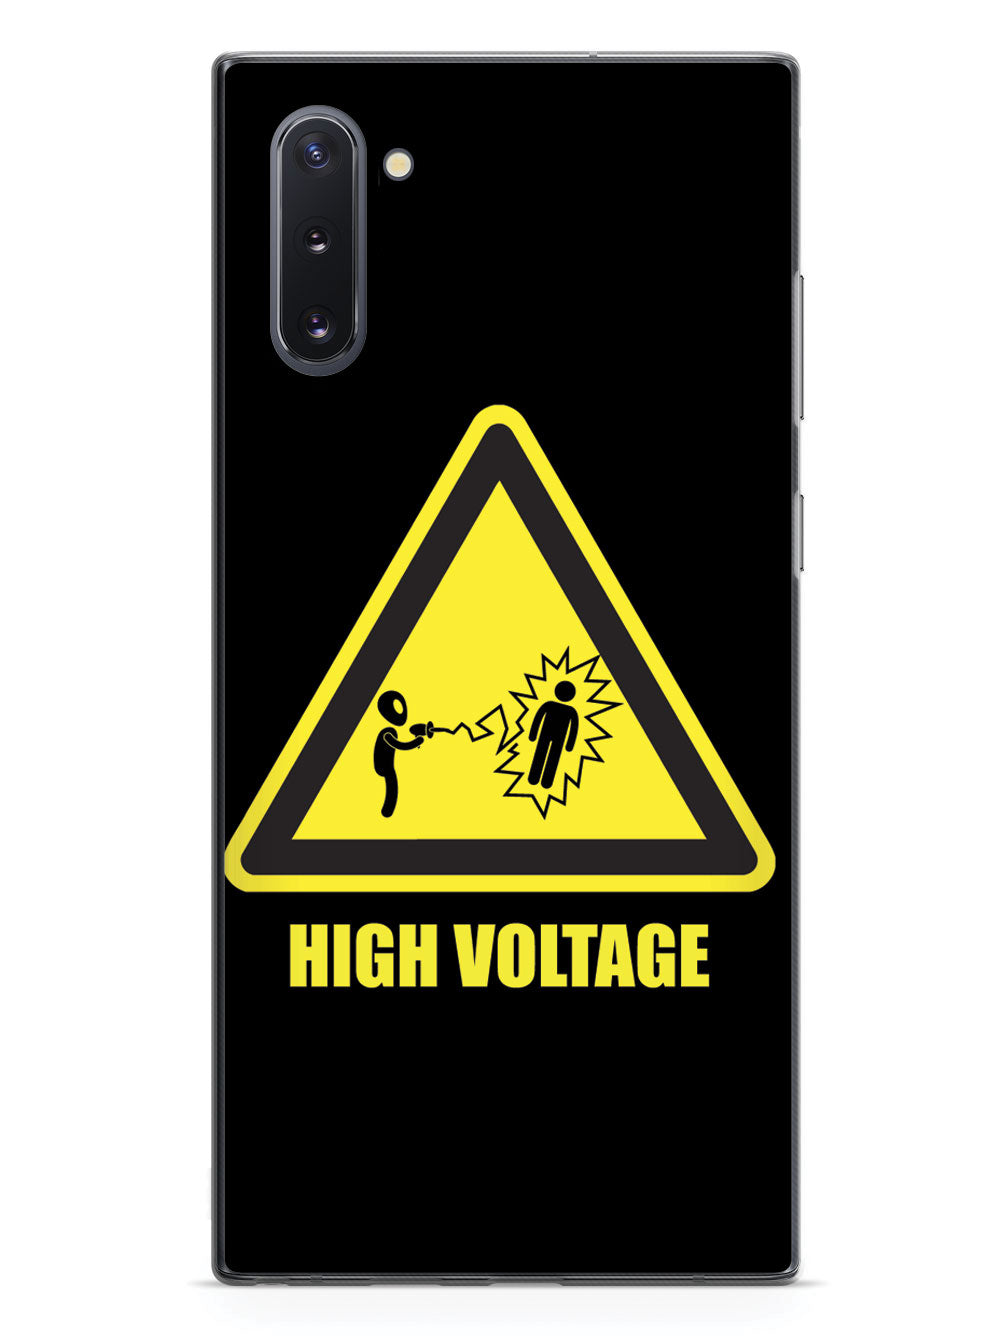 Alien - High Voltage - Black Case